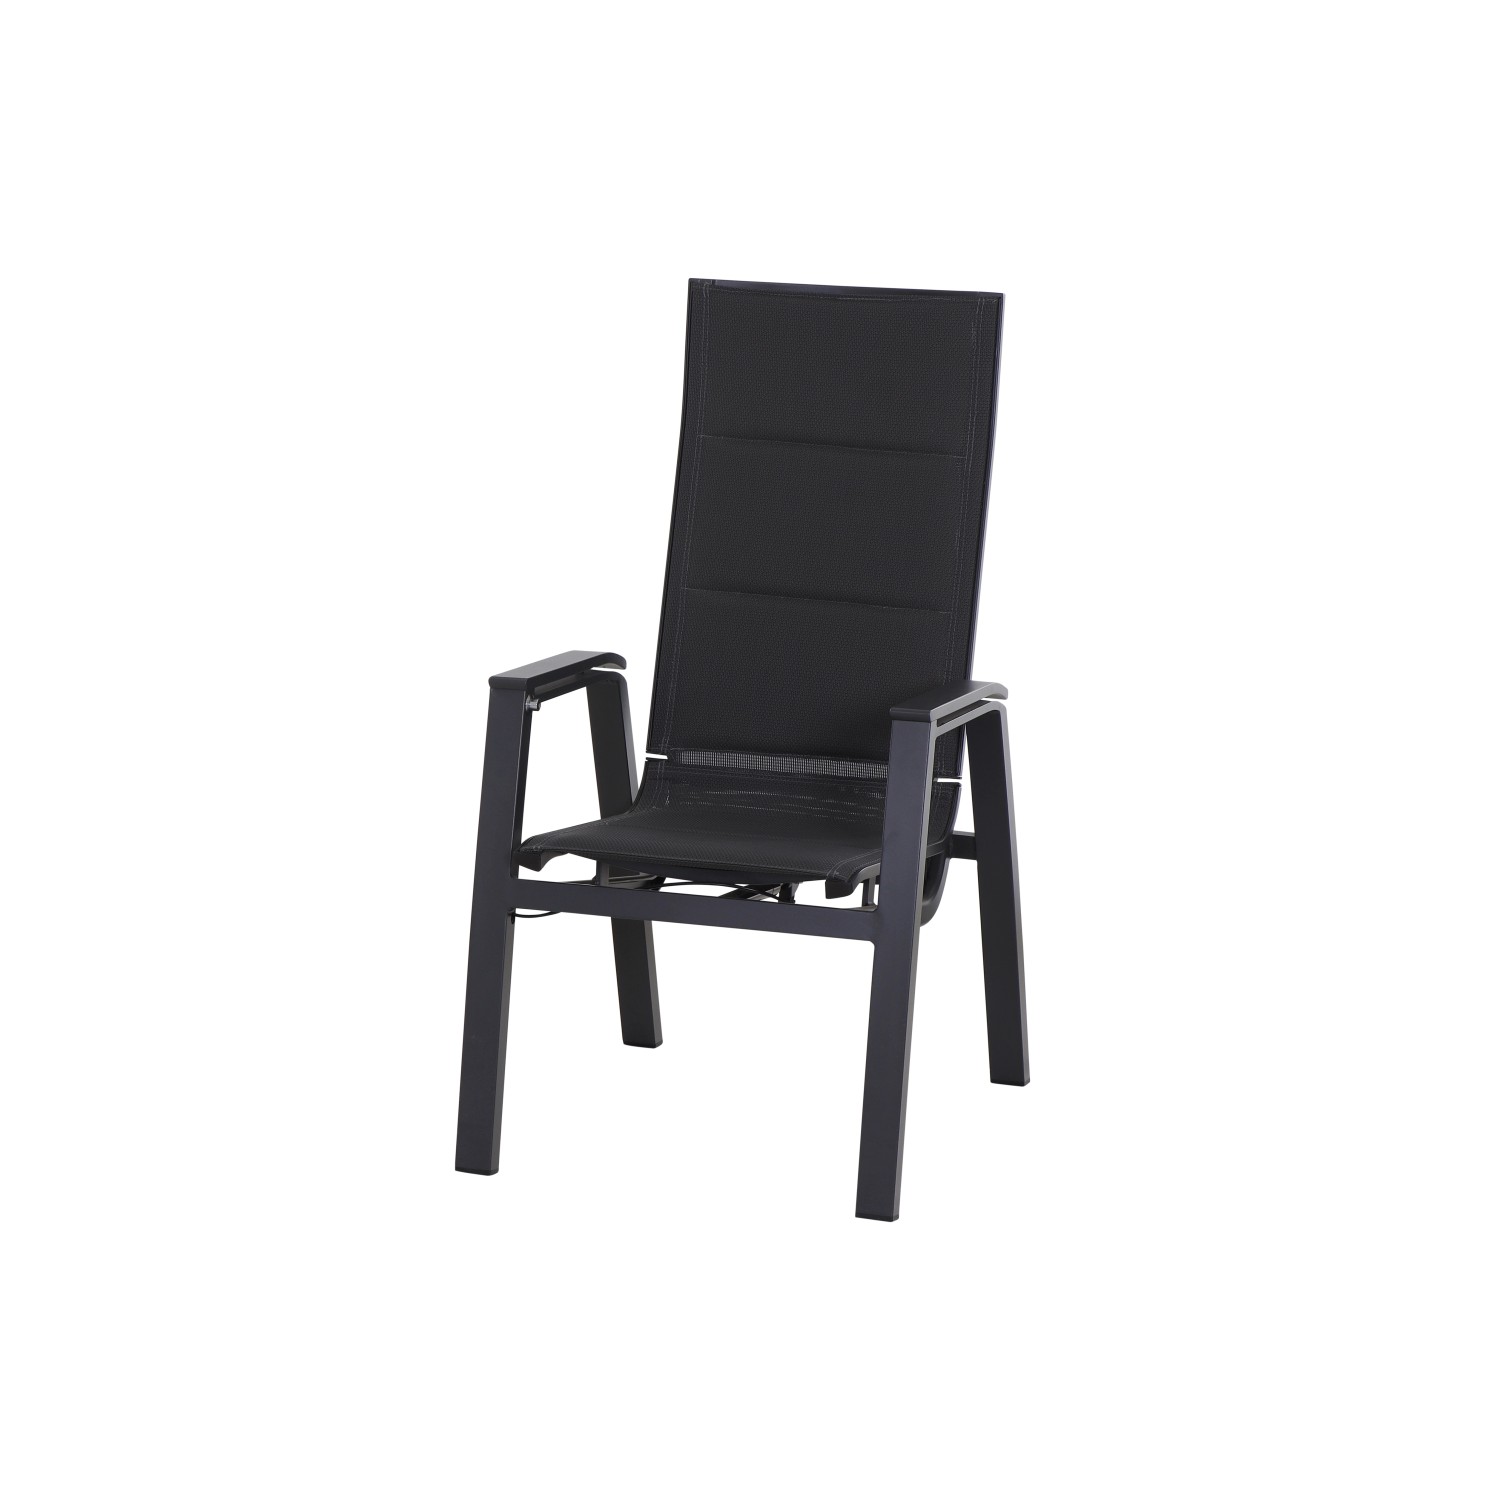 Siena Garden Relax Move Sessel Milano 59 cm x 73 cm x 110 cm Matt-Anthrazit günstig online kaufen